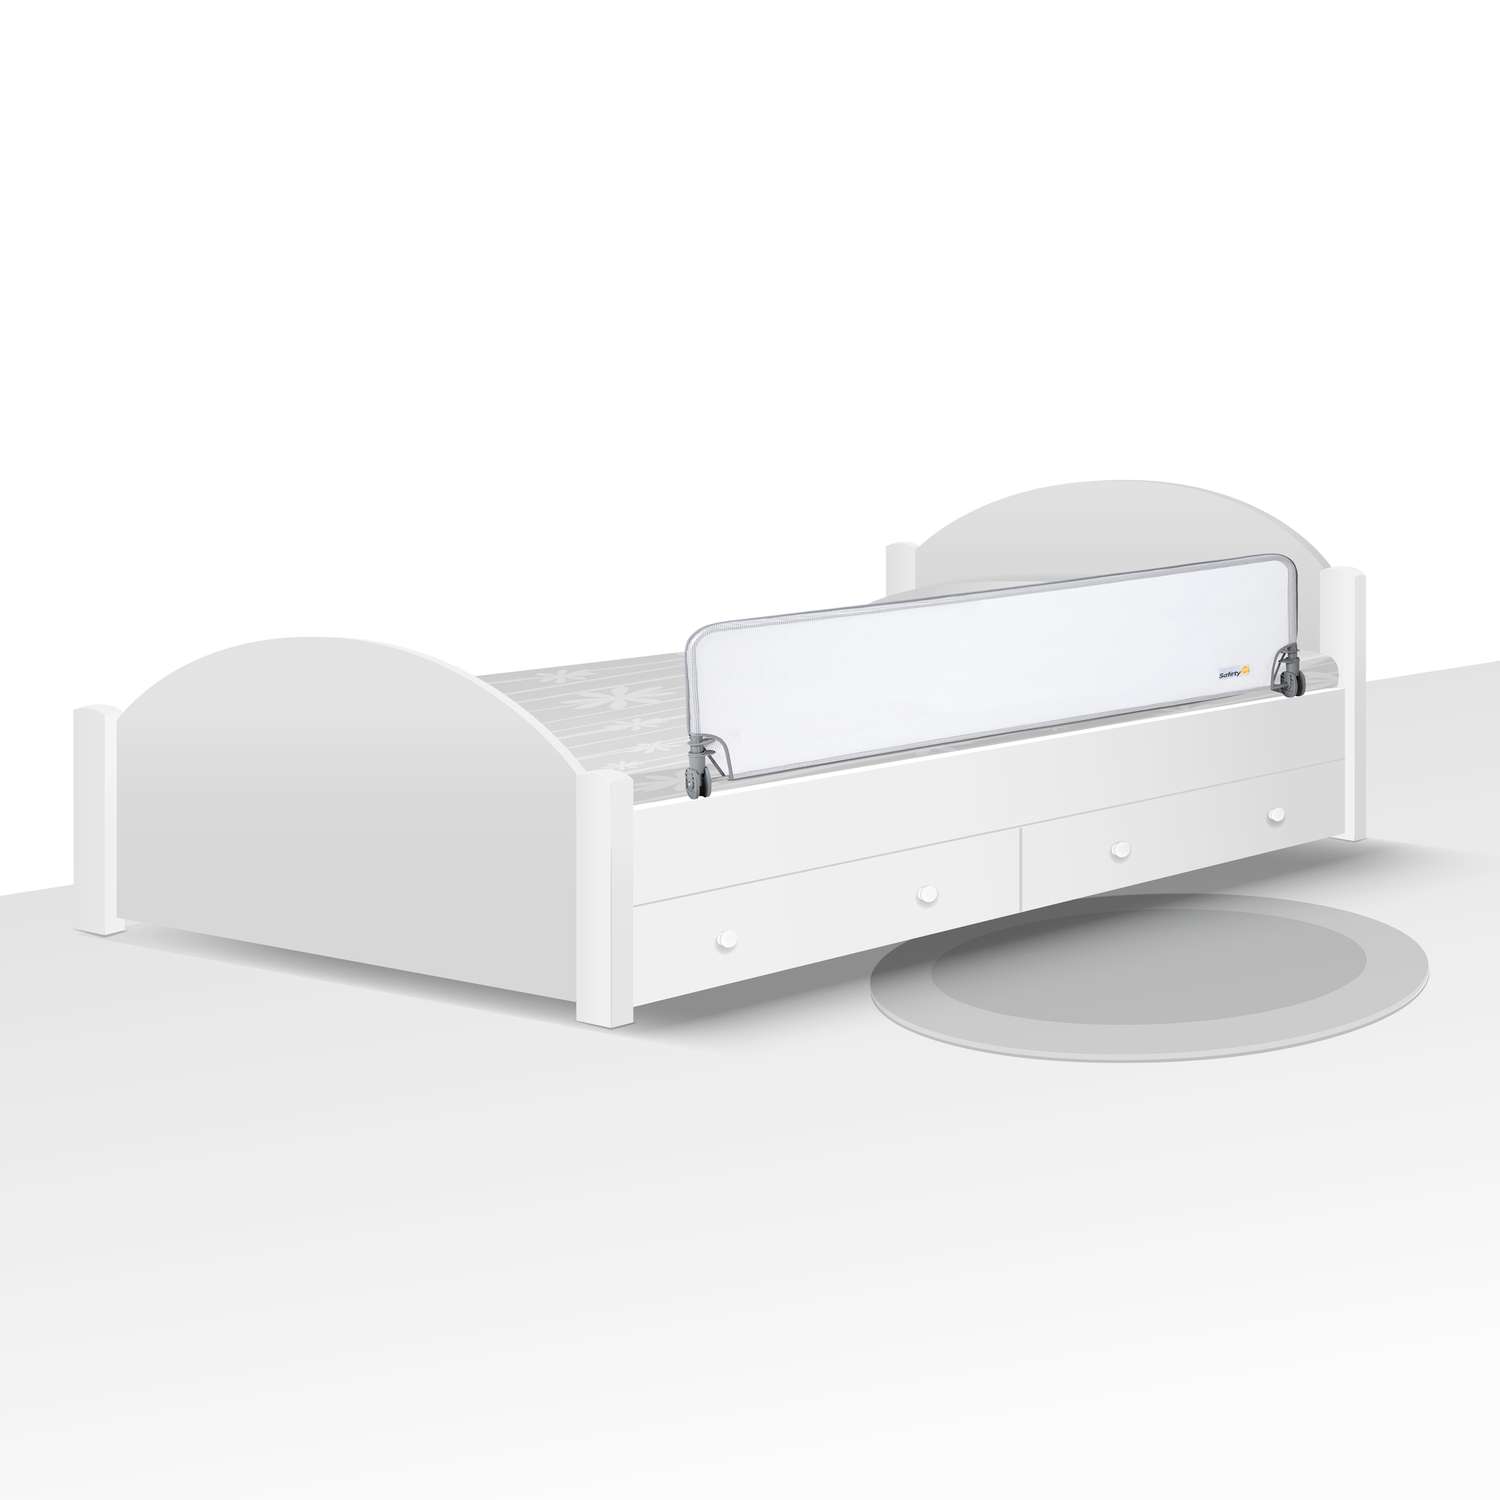 Барьер Safety 1st для детской кроватки Extra large Bed rail 150 см Белый/серый - фото 4